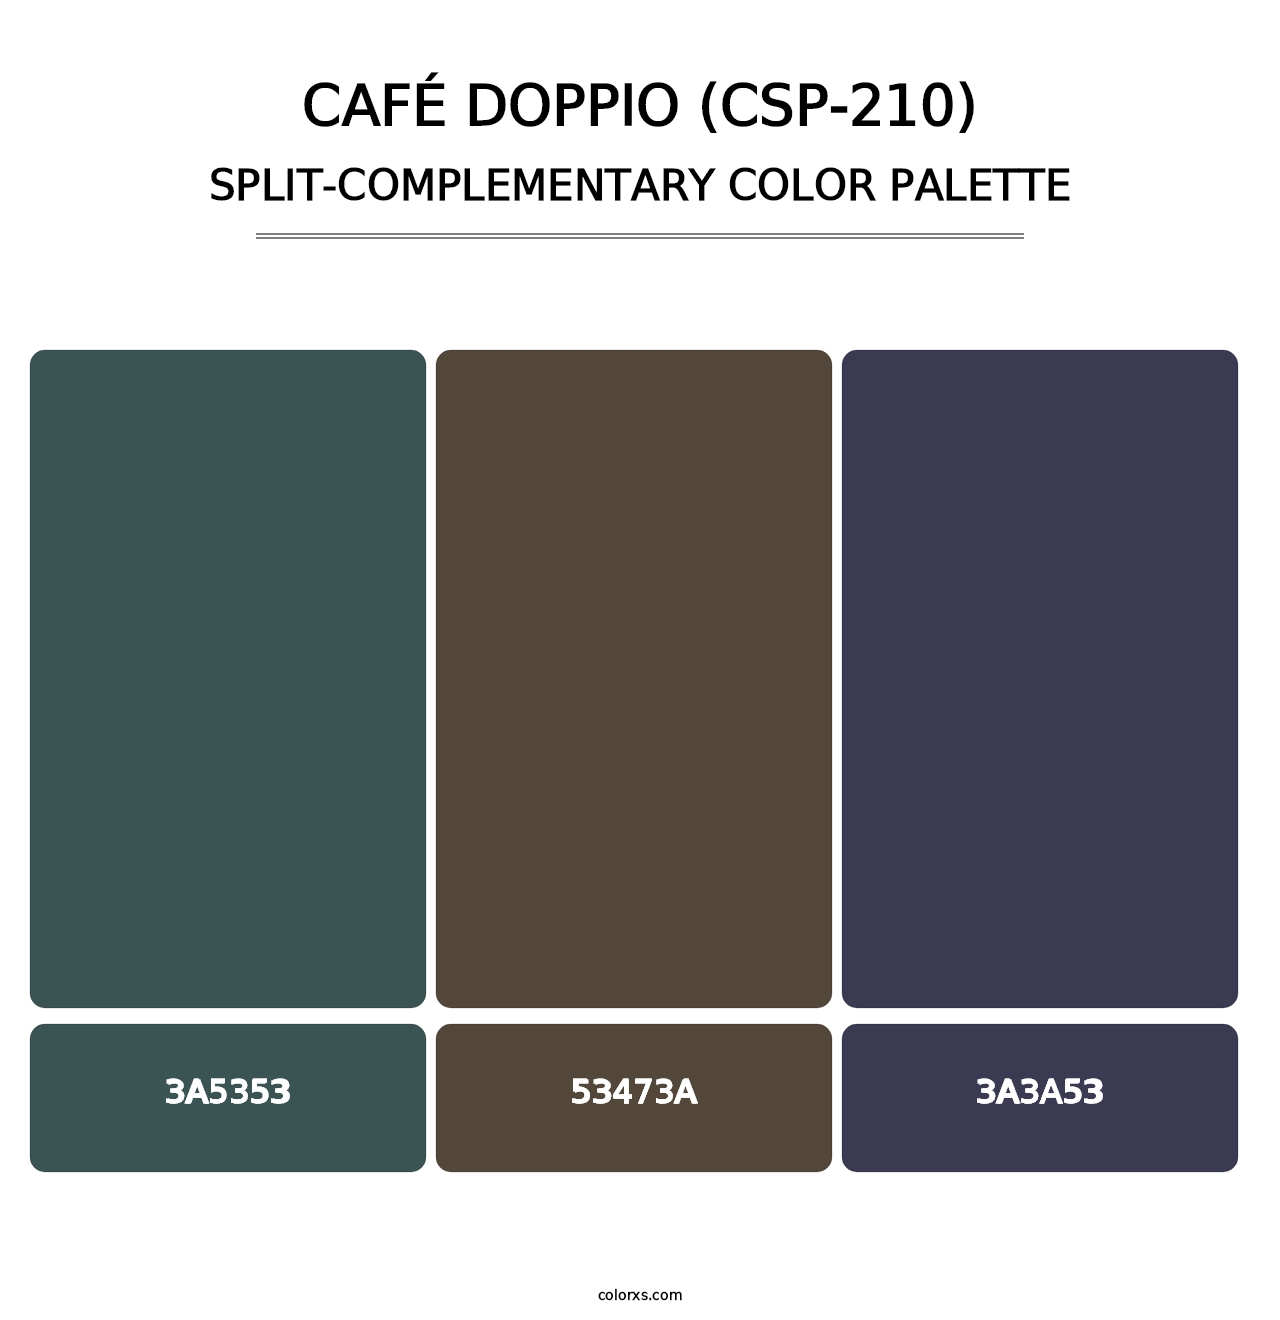 Café Doppio (CSP-210) - Split-Complementary Color Palette